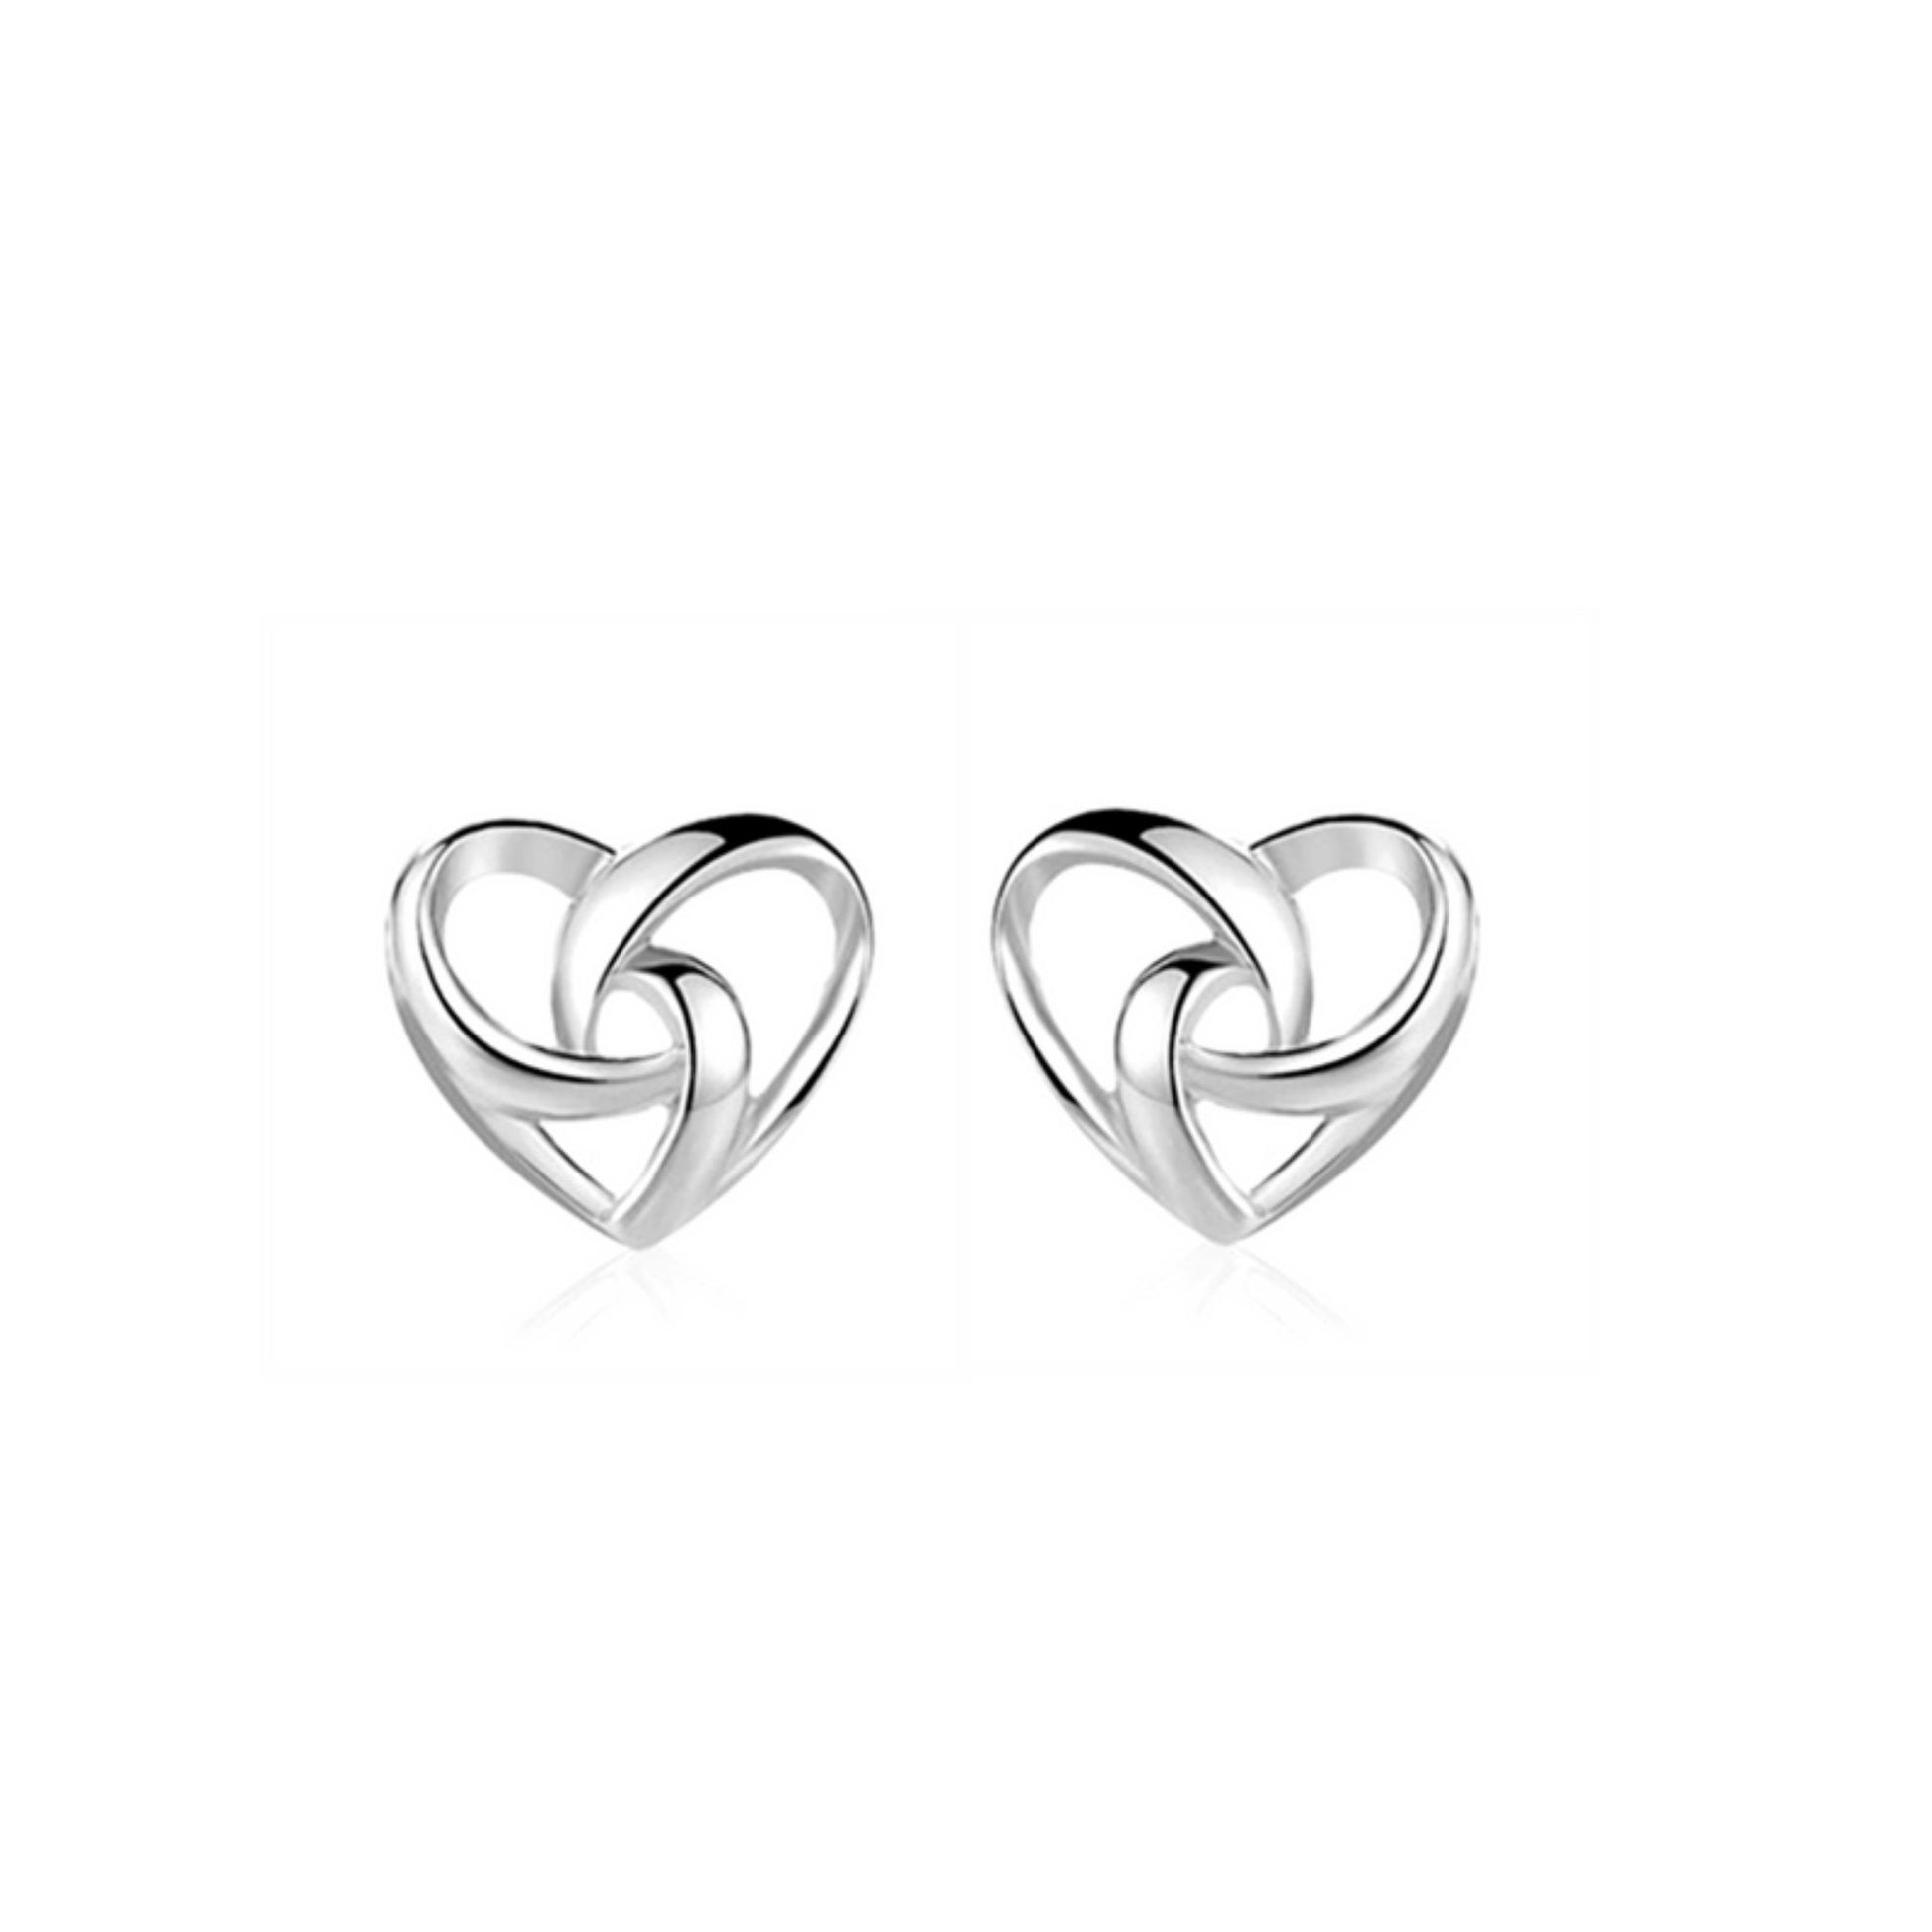 Sterling Silver Twisted Love Knot Heart Stud Earrings - sugarkittenlondon